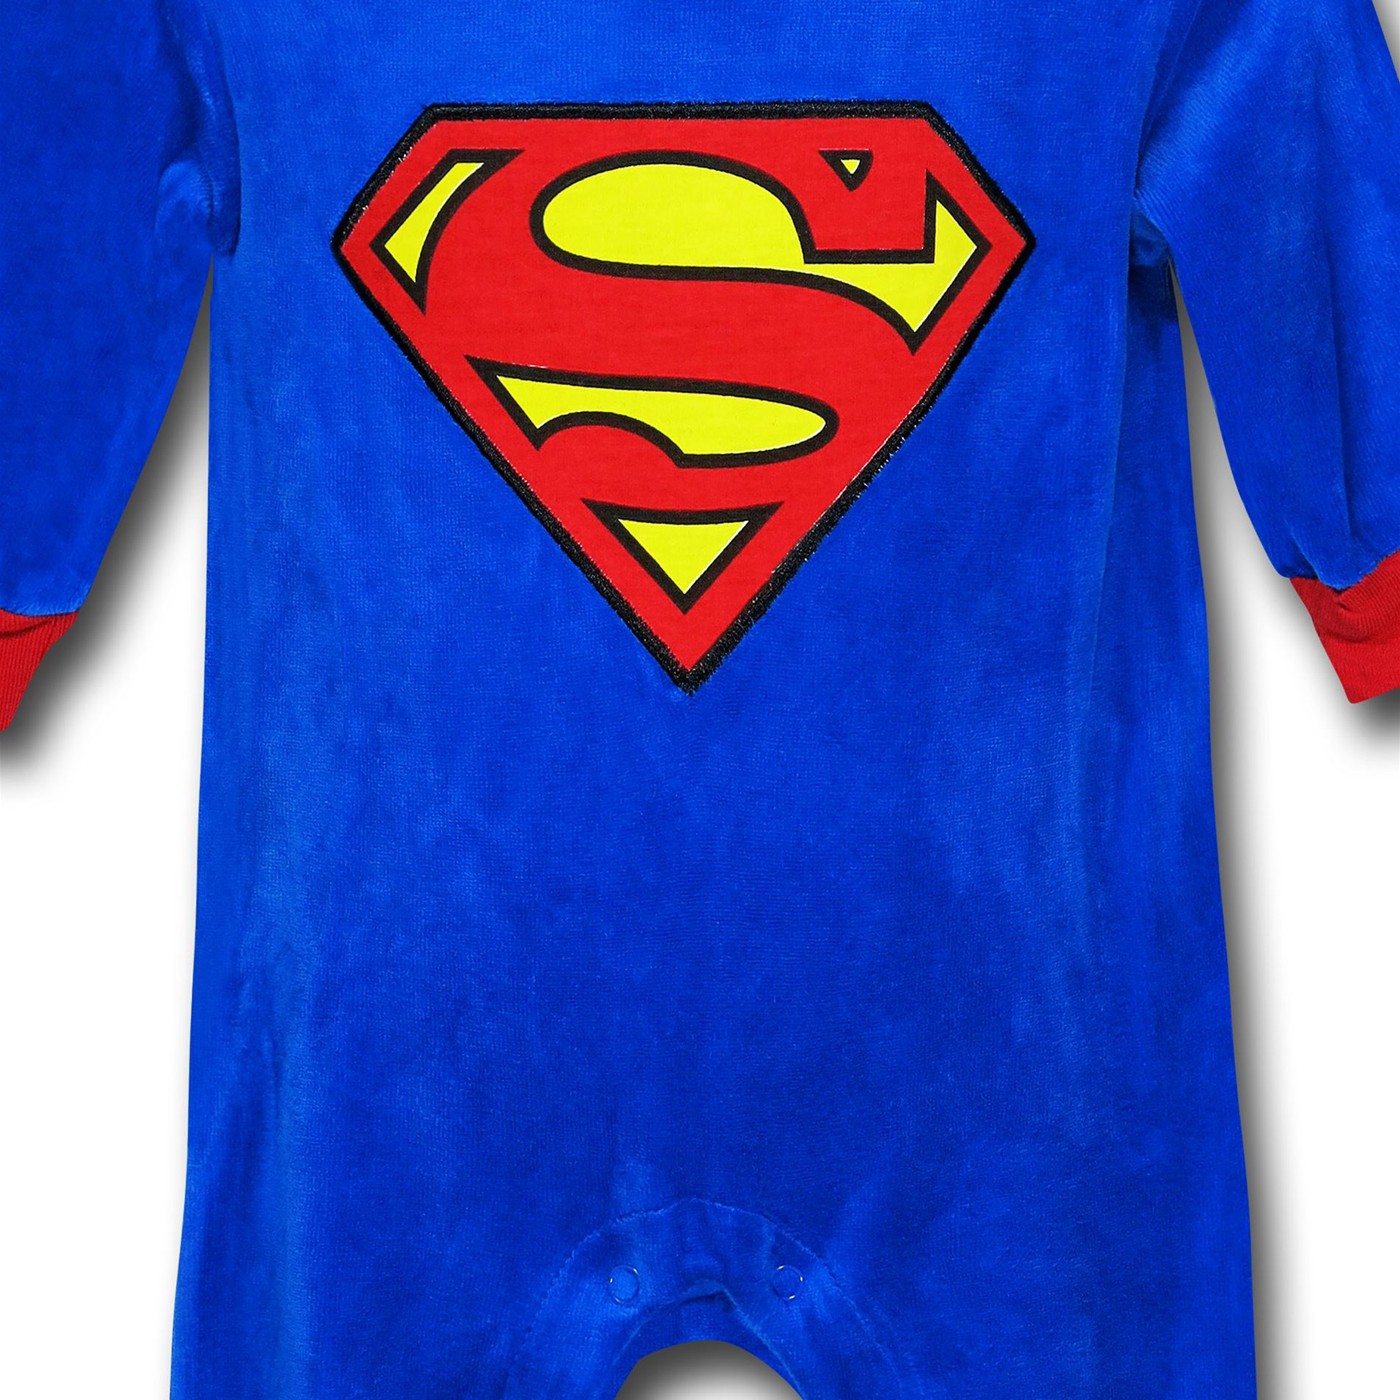 Superman Newborn Costume Coverall